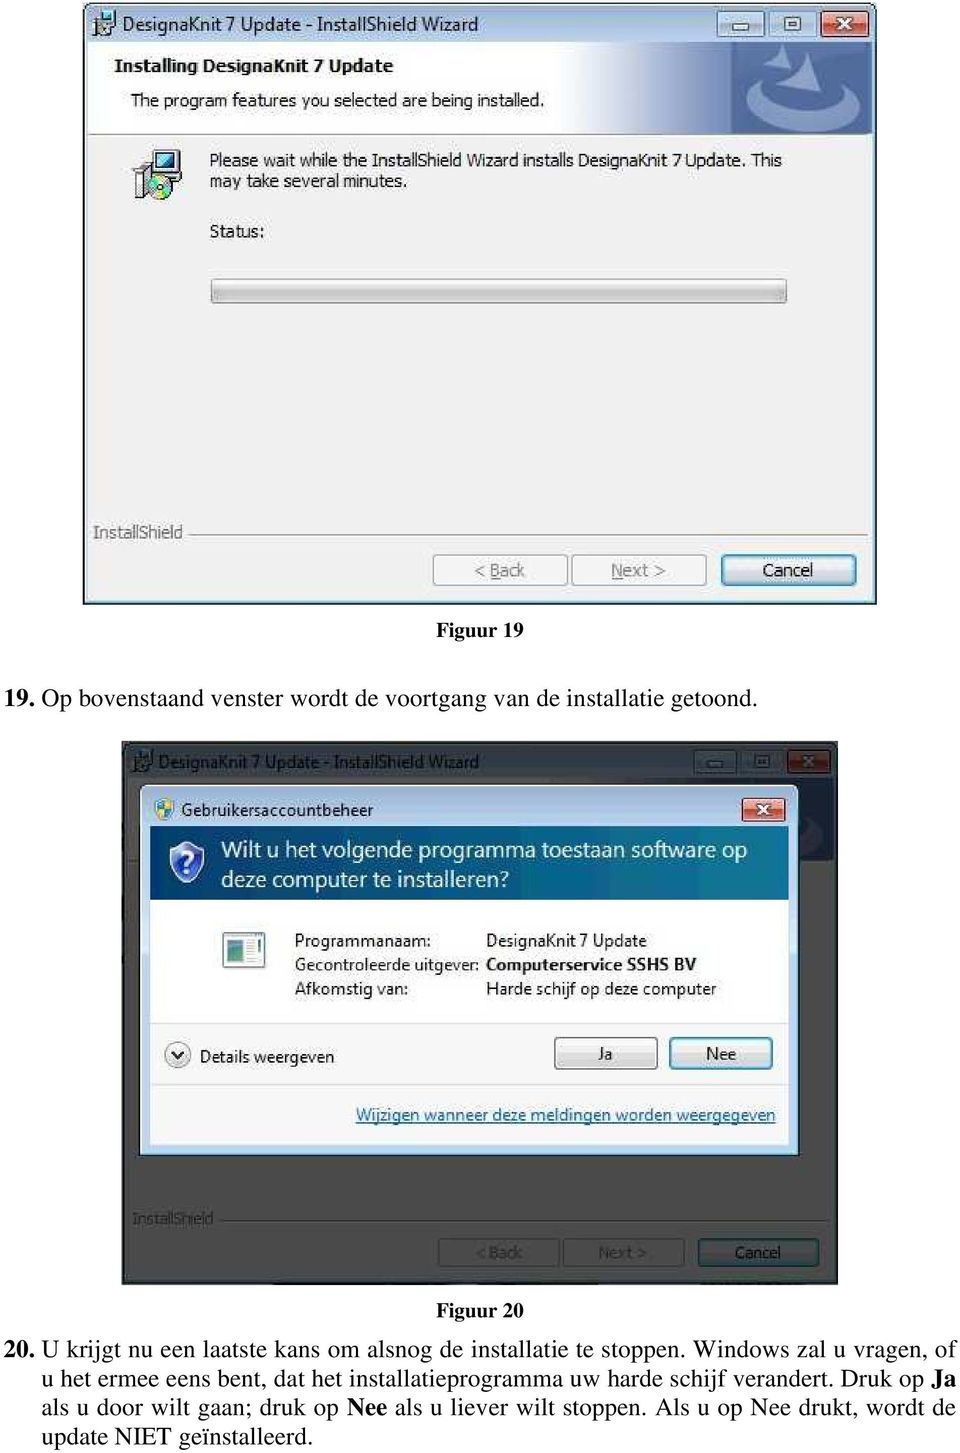 Windows zal u vragen, of u het ermee eens bent, dat het installatieprogramma uw harde schijf